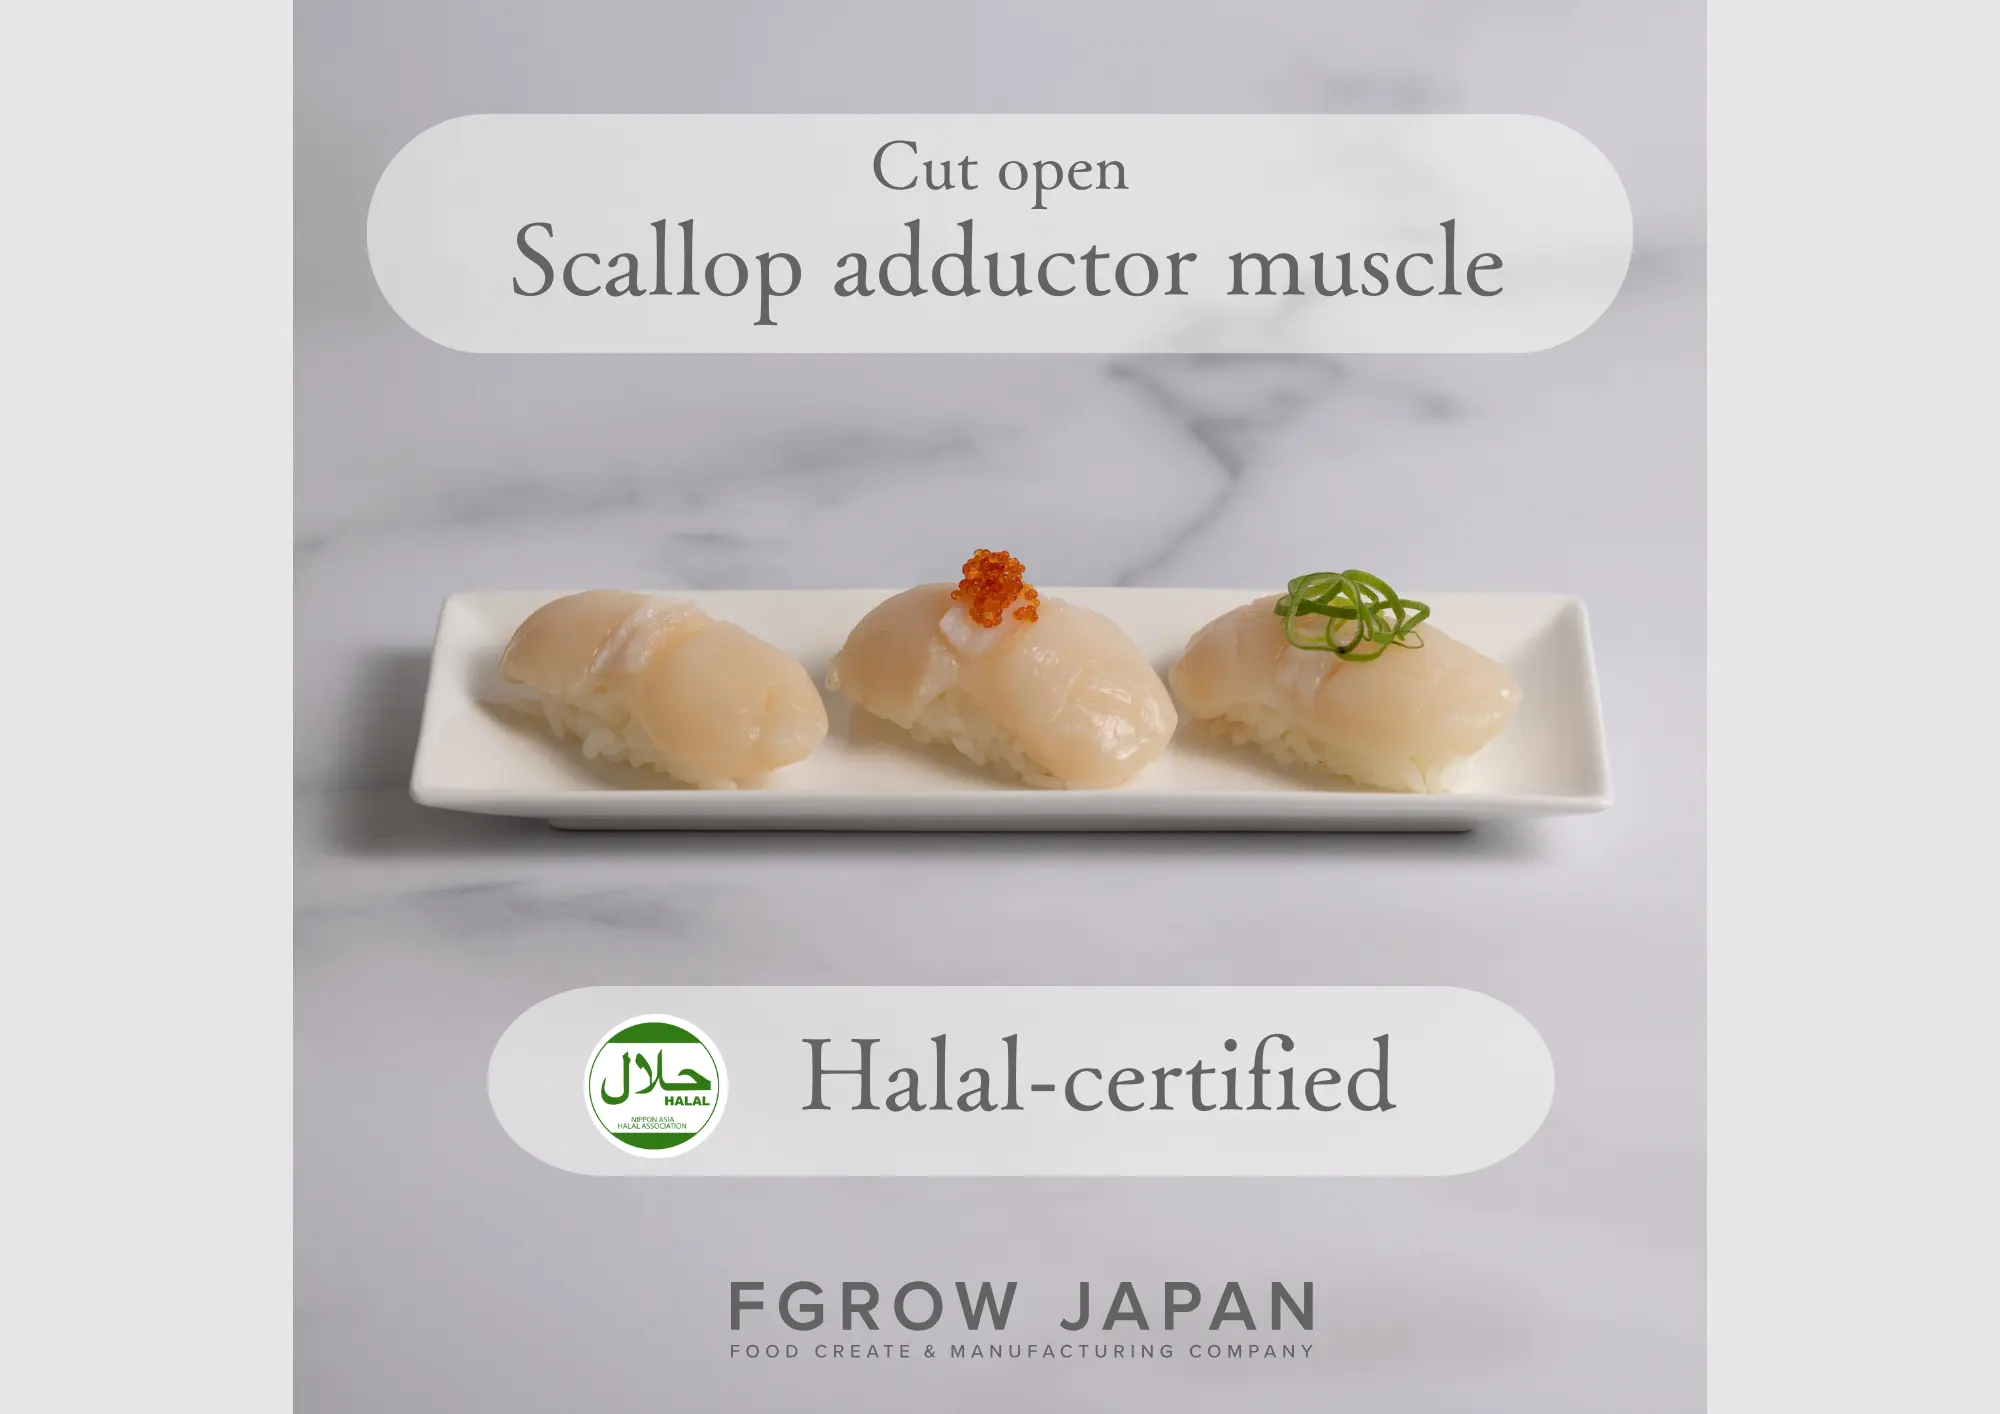 أفضل منتج غذائي ياباني مورد المأكولات البحرية واللحوم المجمدة سكالوب